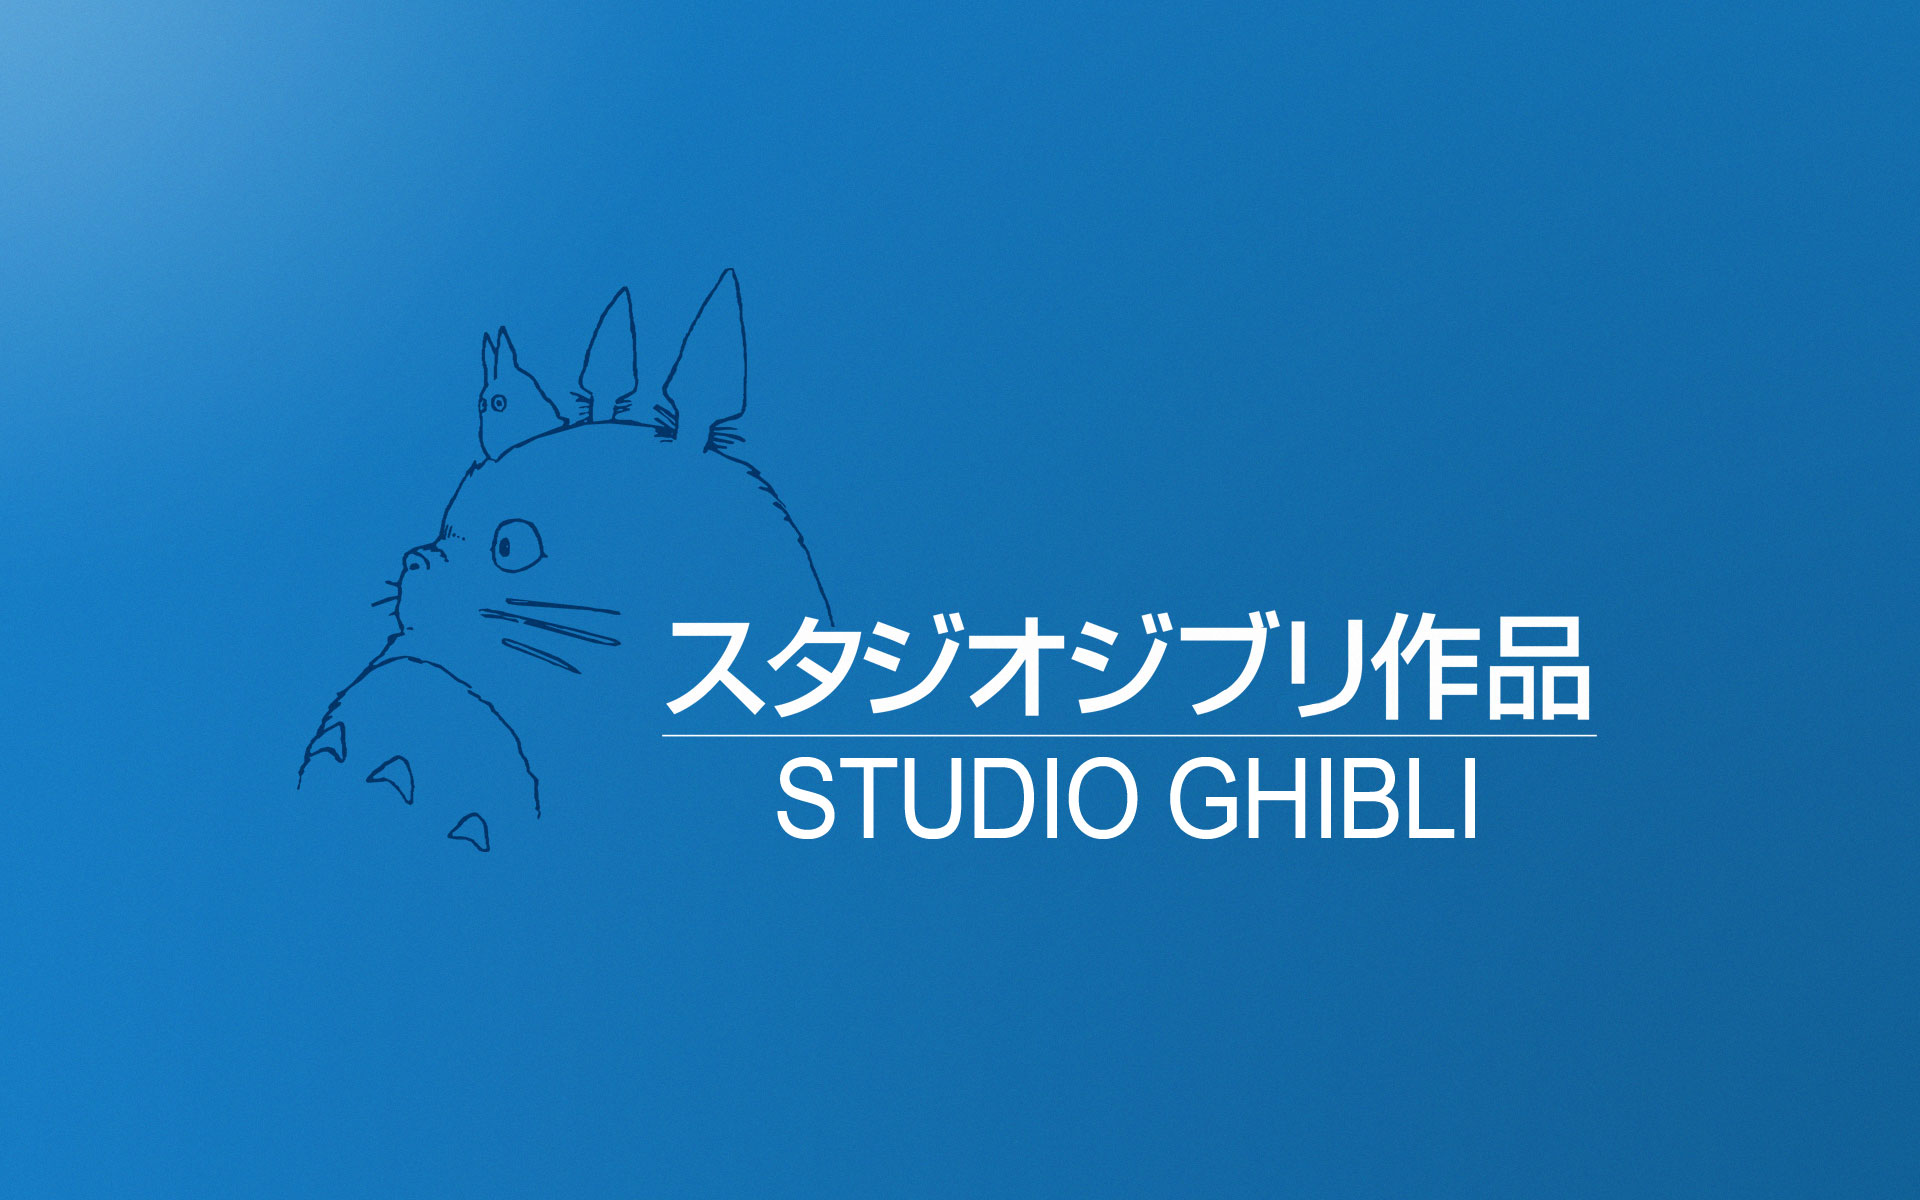 studio ghibli, anime